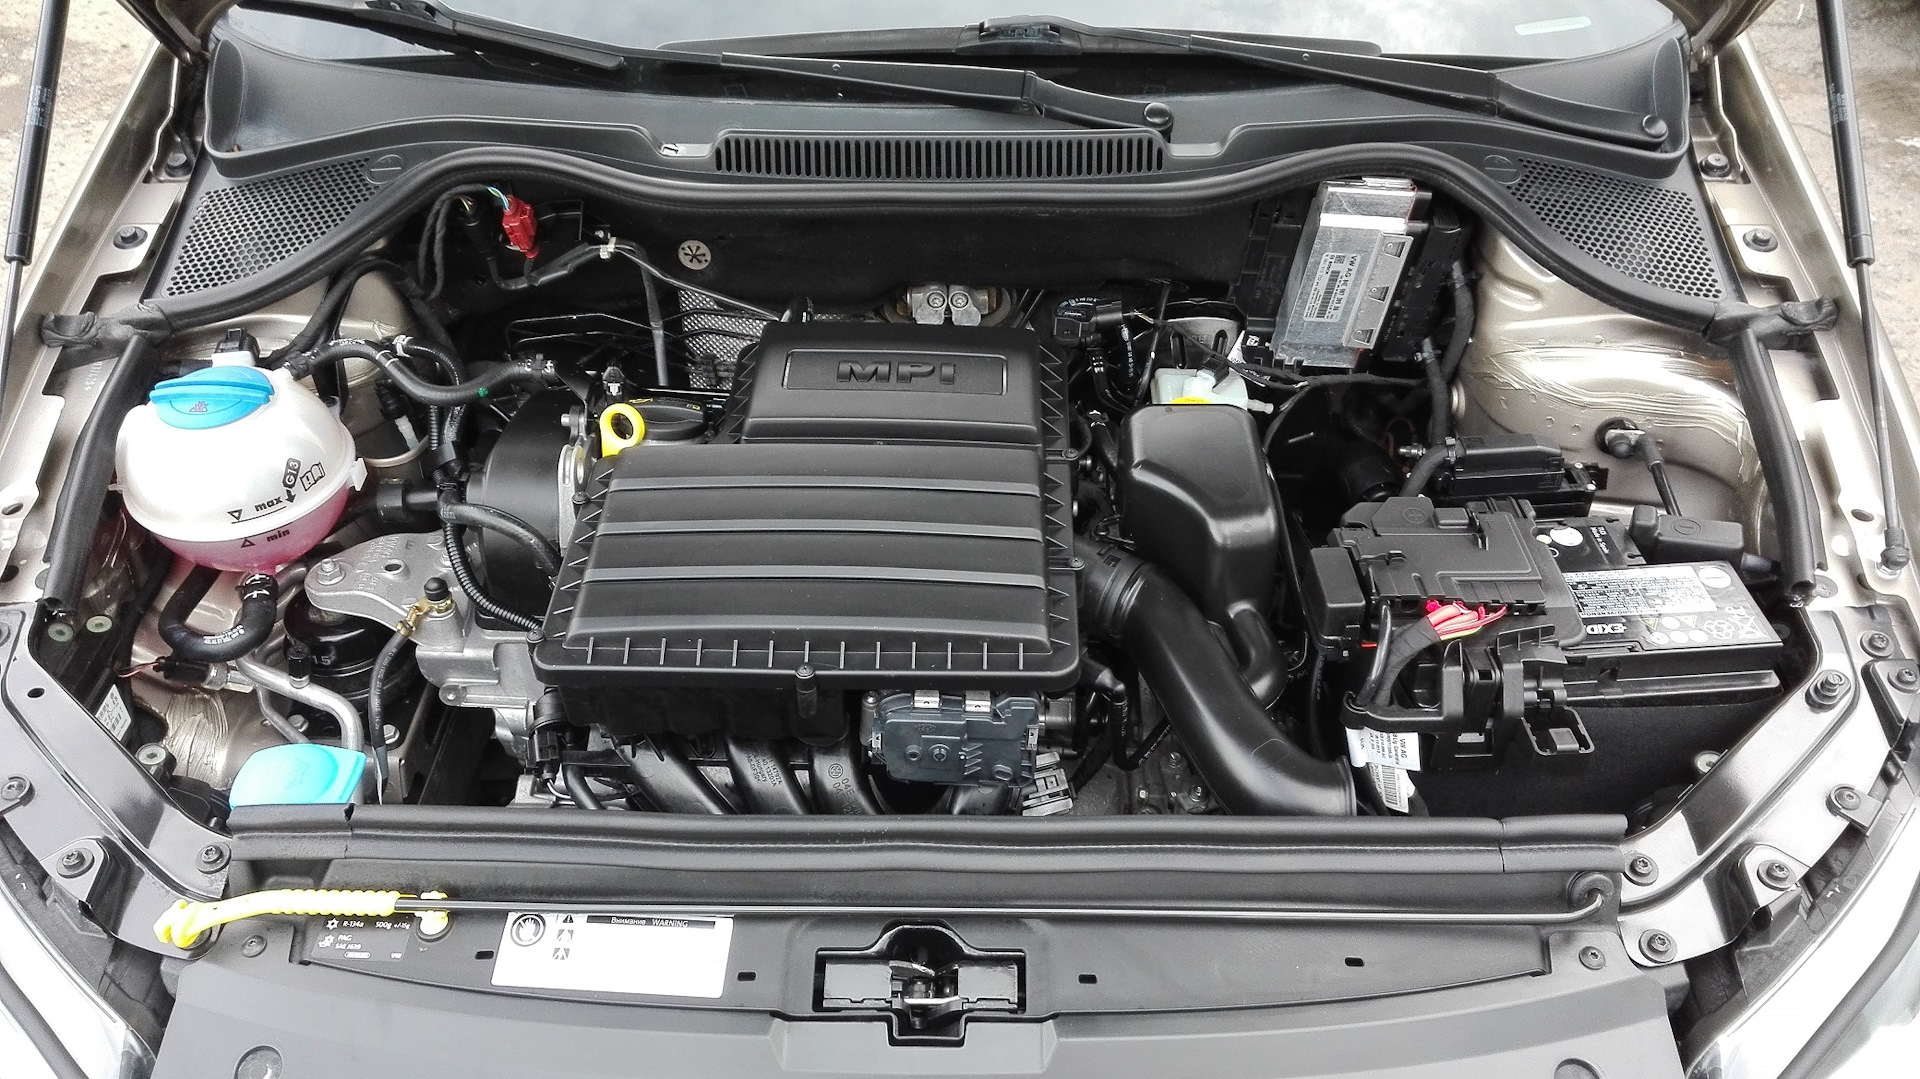 Фольксваген поло какой двигатель лучше. Двигатель Фольксваген поло седан 1.6. Двигатель Volkswagen Polo sedan 1.6. Двигатель поло седан 1 6 110 л с. Двигатель VW Polo sedan 1.6 110 л.с.